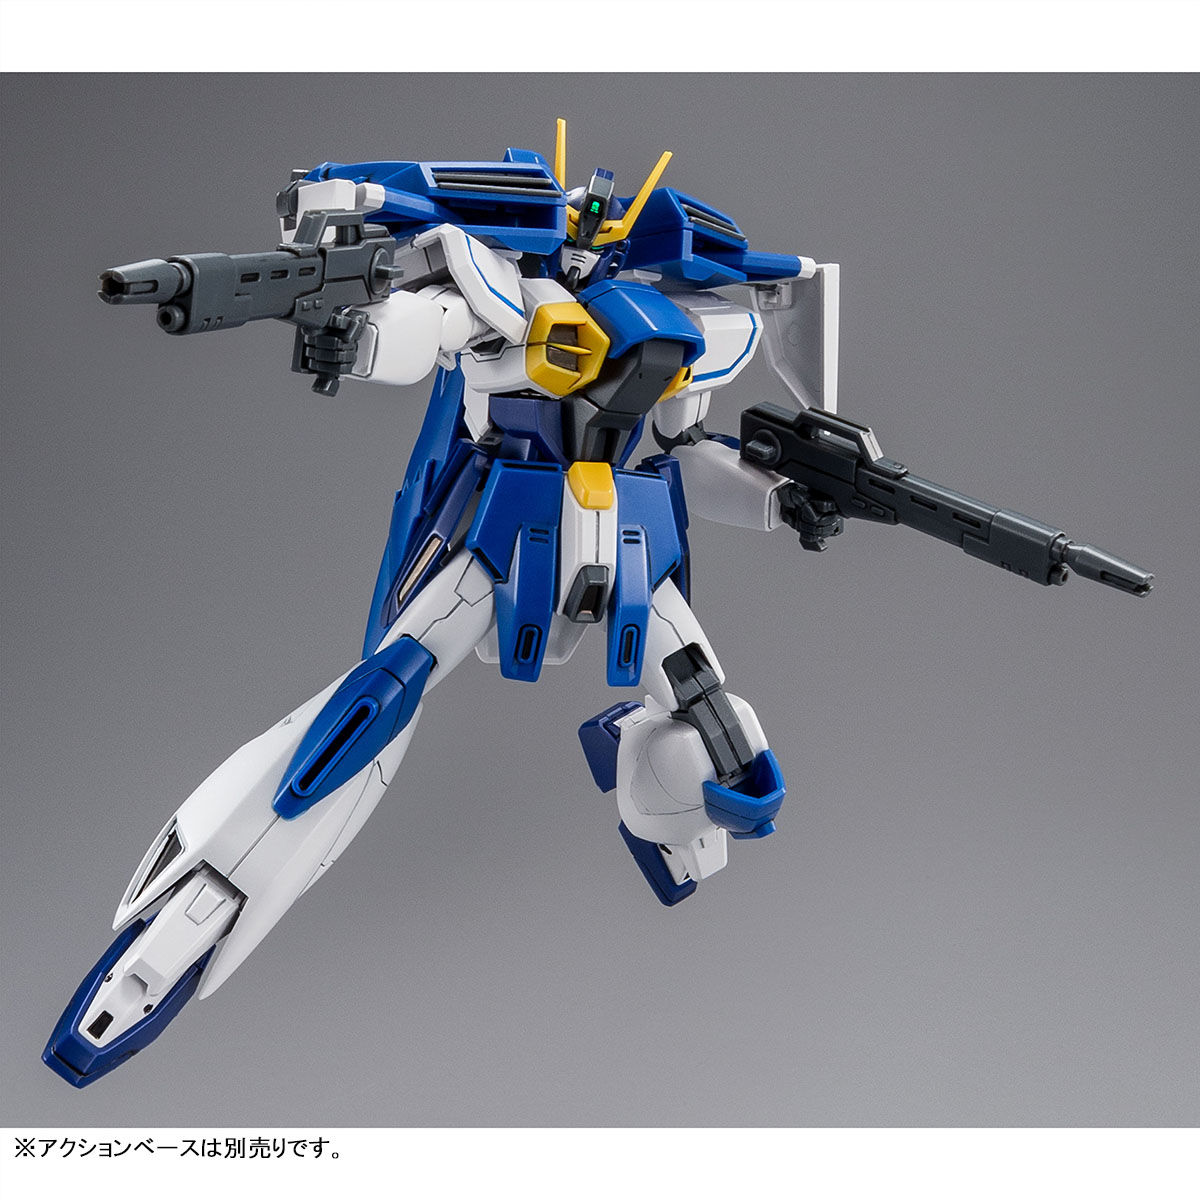 HGAW 1/144 GW-9800-B Gundam Airmaster Burst